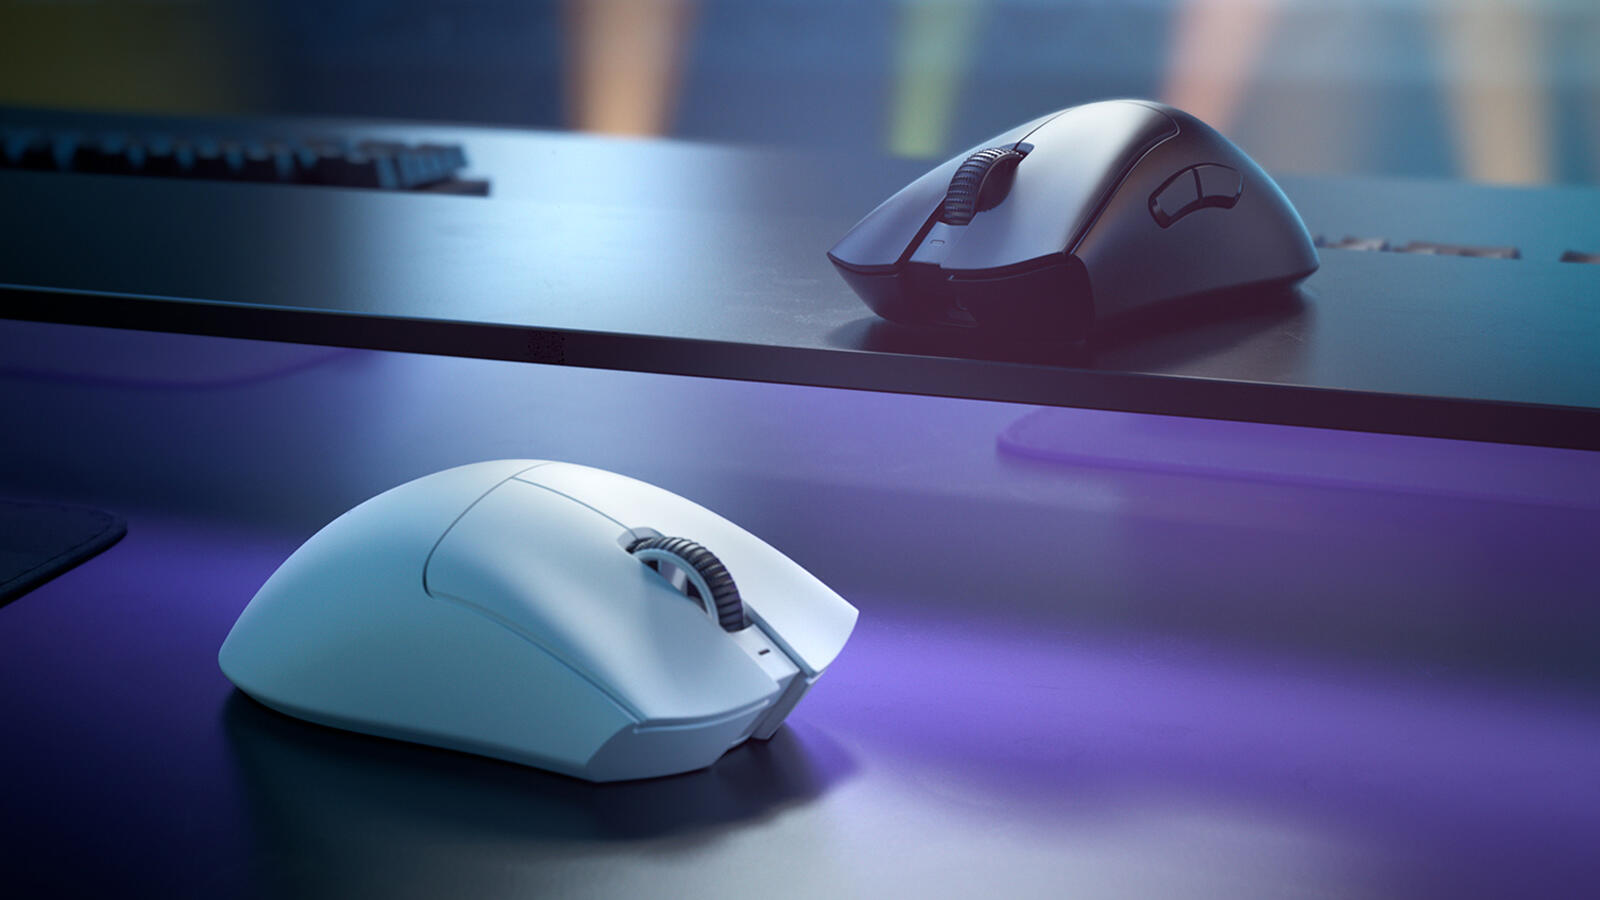 The World's Best Gaming Mouse (Now Mini) - Razer DeathAdder V2